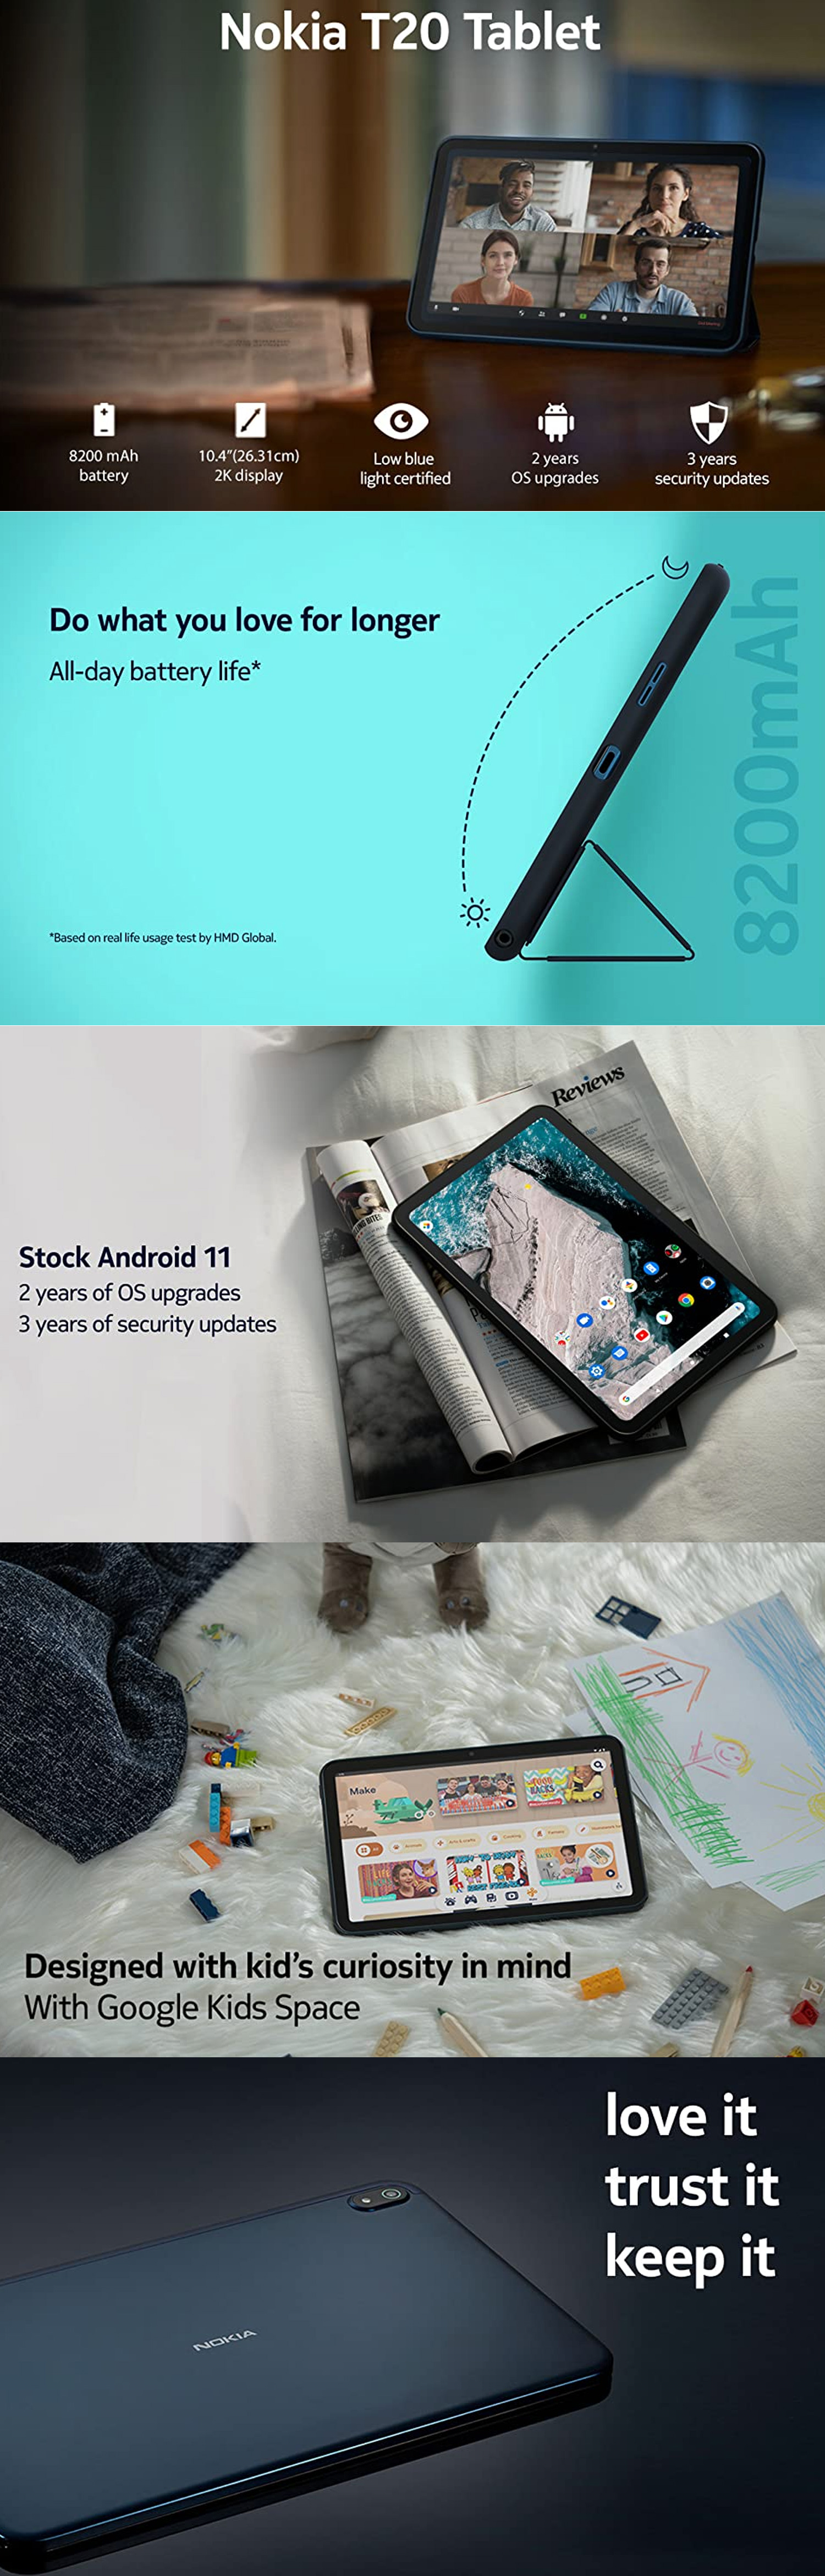 Nokia T20 Tablet 3gb ram 32gb storage wifi blue